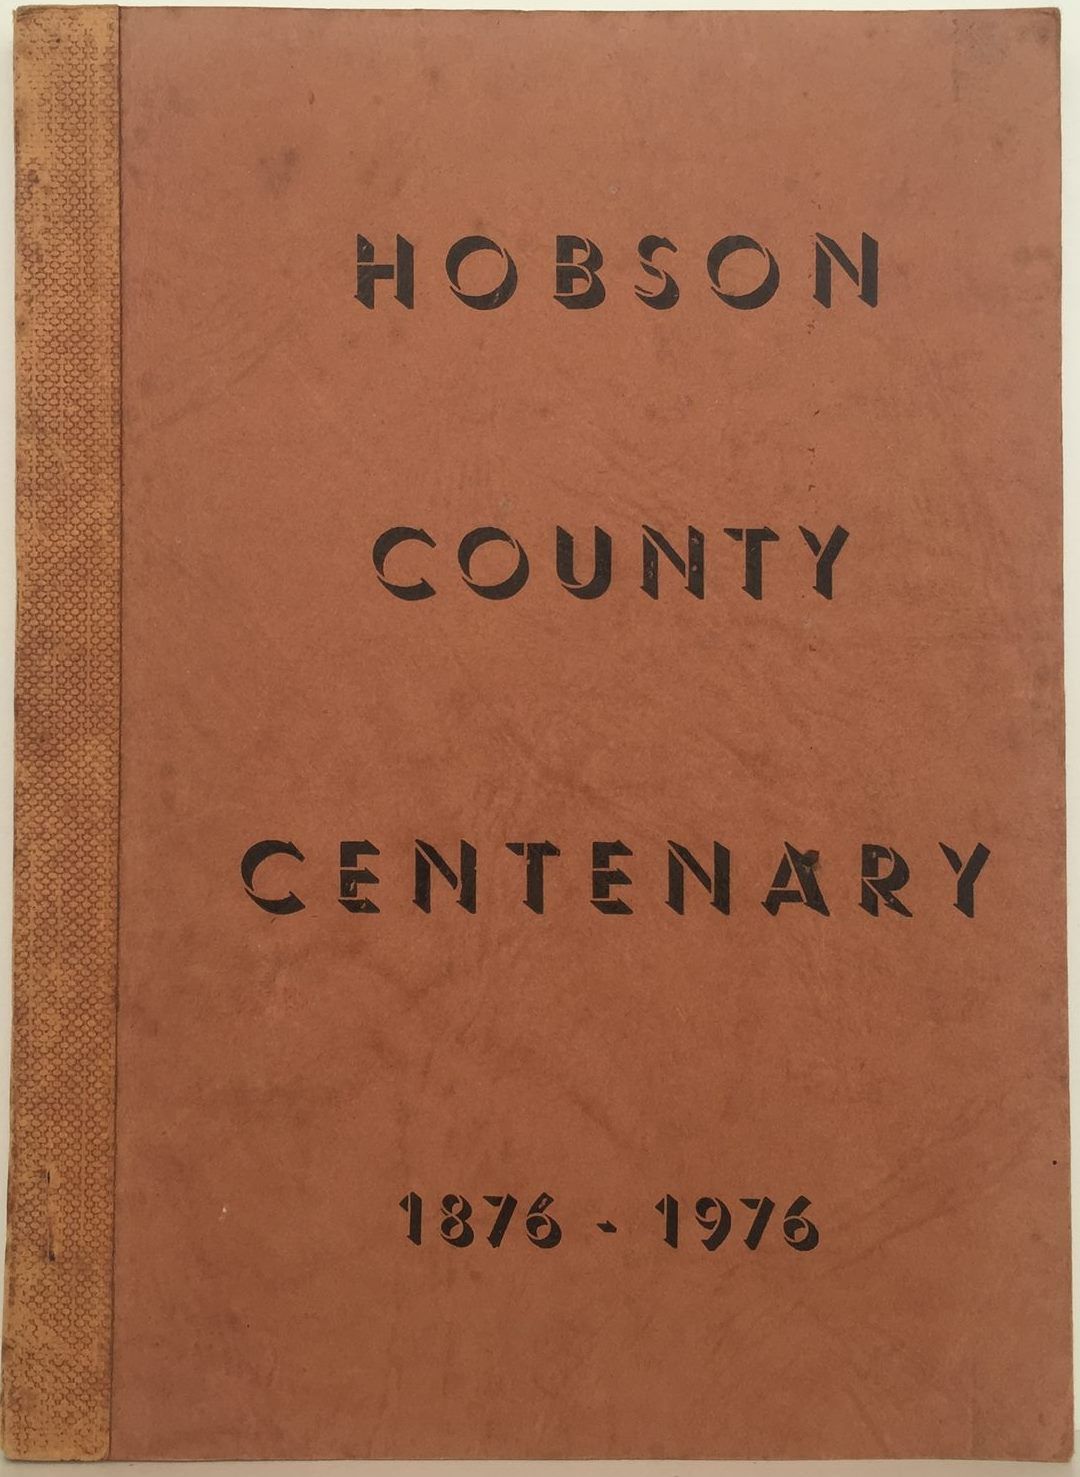 Hobson County Centenary 1876 - 1976